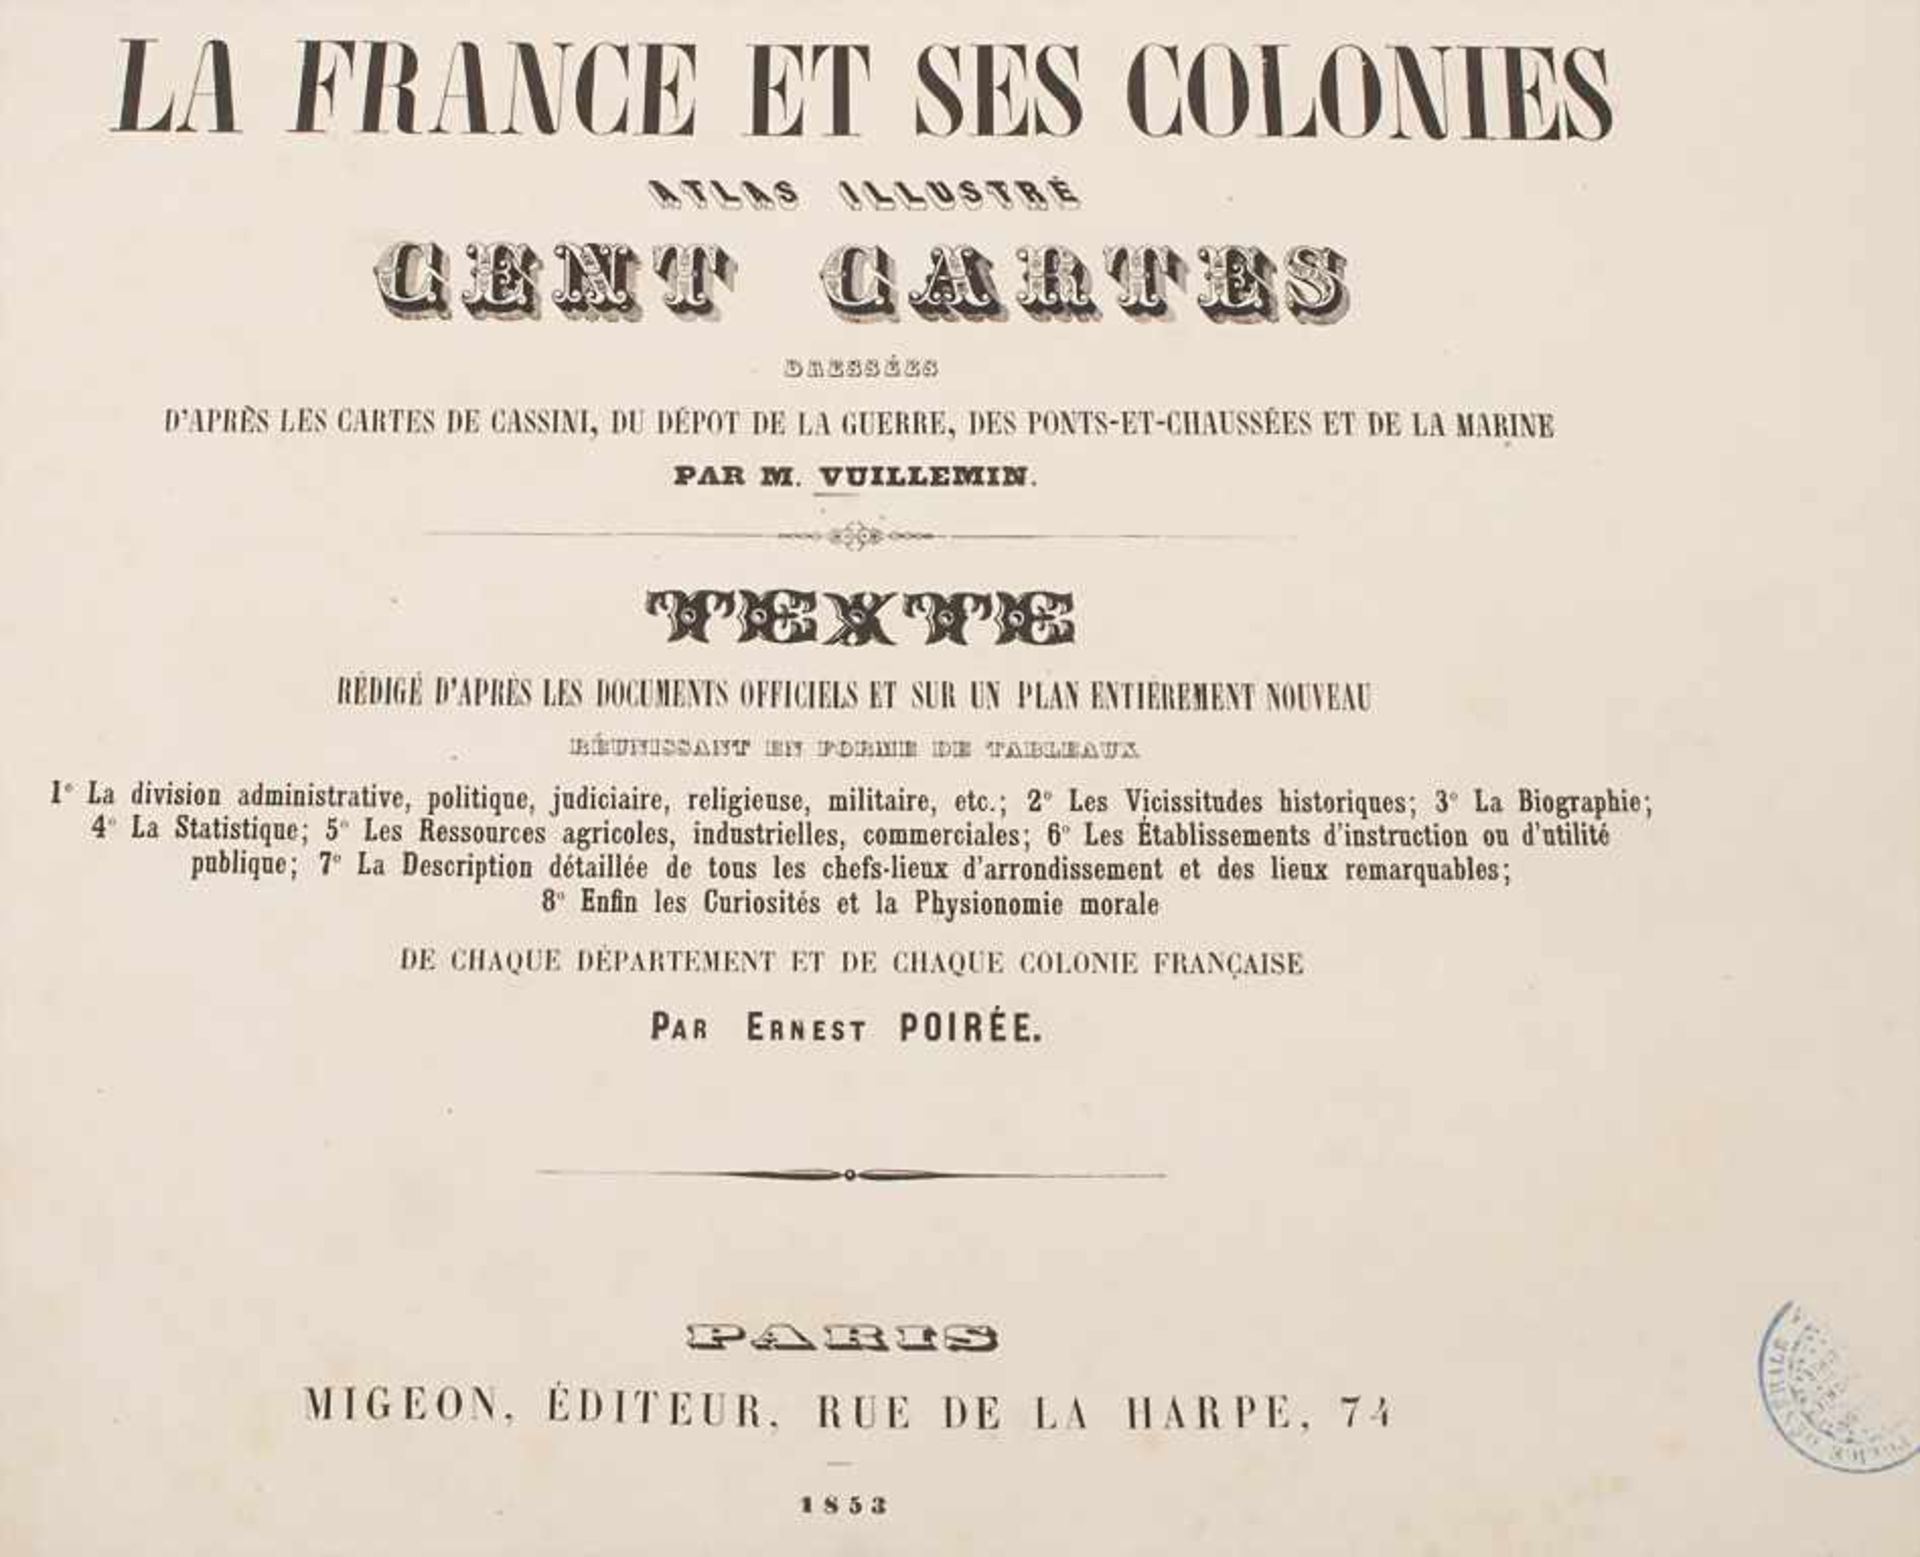 Vuillemin, M.: La France et ses colonies. Atlas illustre. cent cinq cartes. Edition de 1853Titel: La